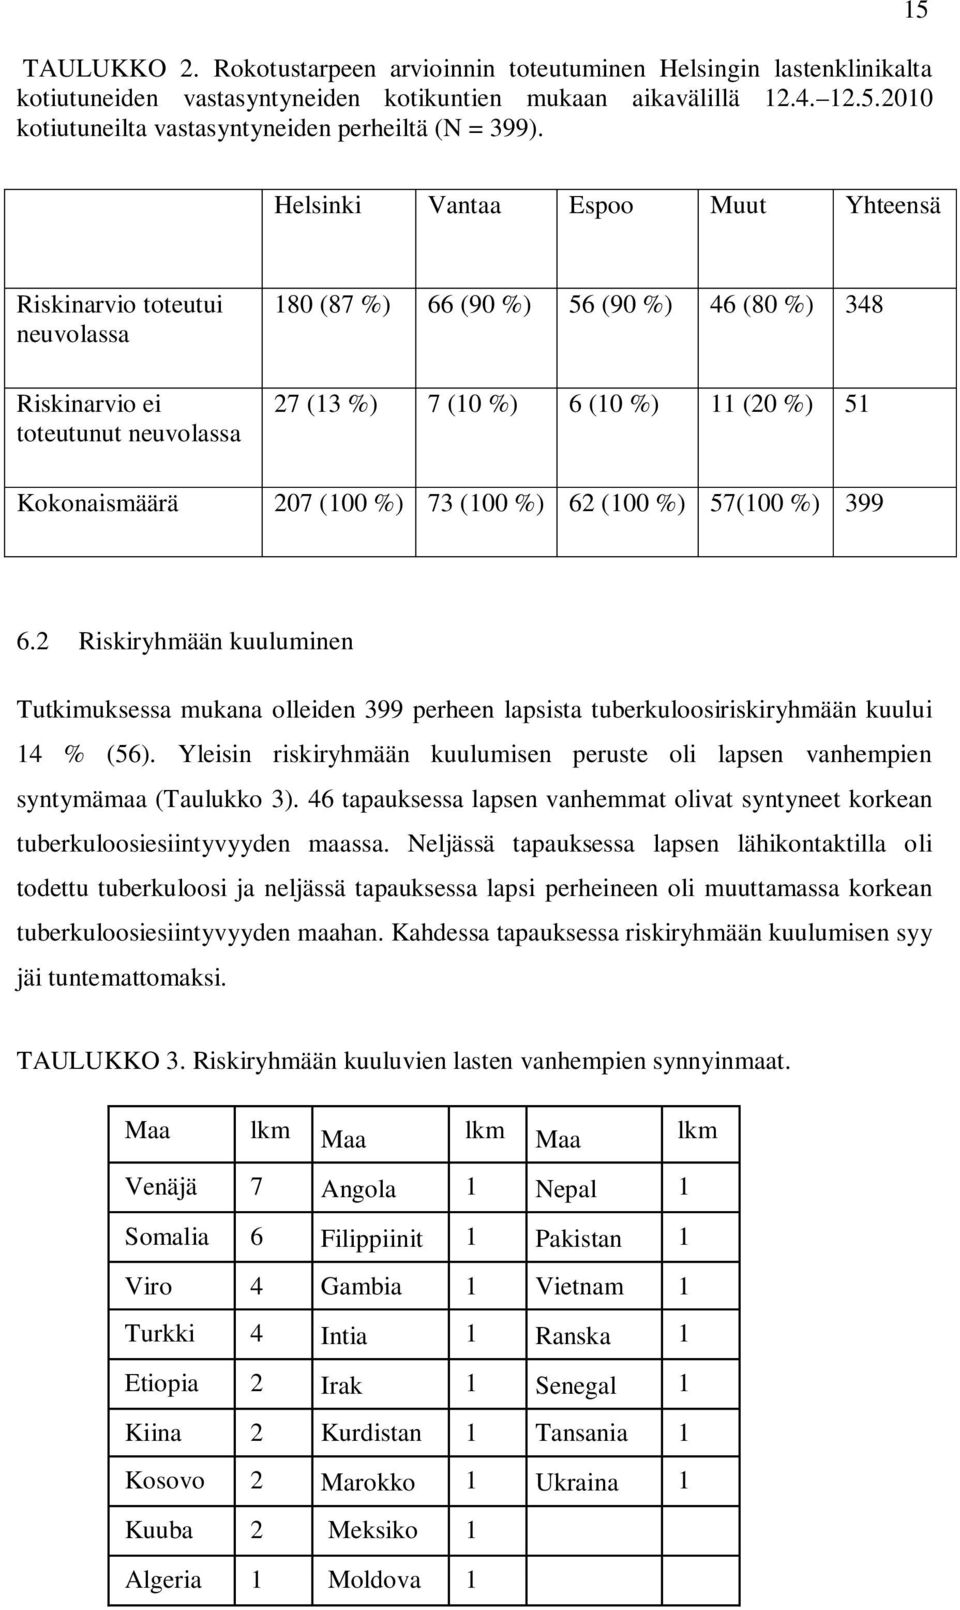 15 Helsinki Vantaa Espoo Muut Yhteensä Riskinarvio toteutui neuvolassa Riskinarvio ei toteutunut neuvolassa 180 (87 %) 66 (90 %) 56 (90 %) 46 (80 %) 348 27 (13 %) 7 (10 %) 6 (10 %) 11 (20 %) 51